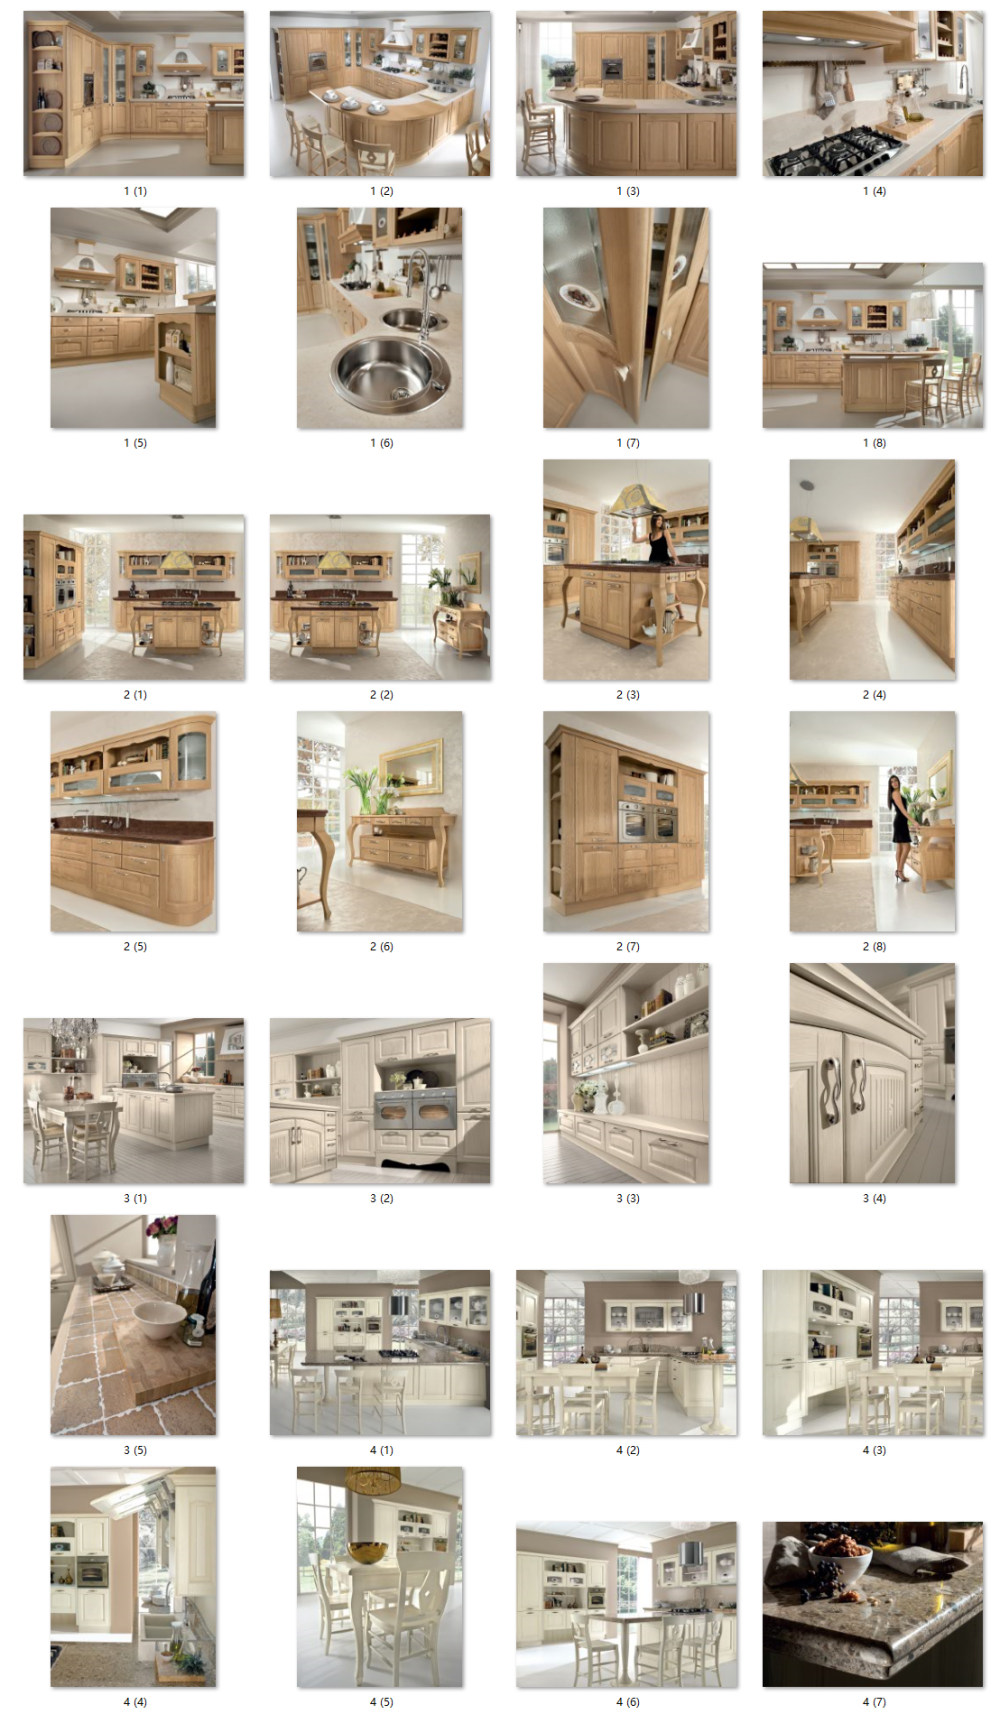 300张橱柜设计高清图 欧式橱柜设计 现代橱柜设计 带细节图_未标题-1_01.jpg